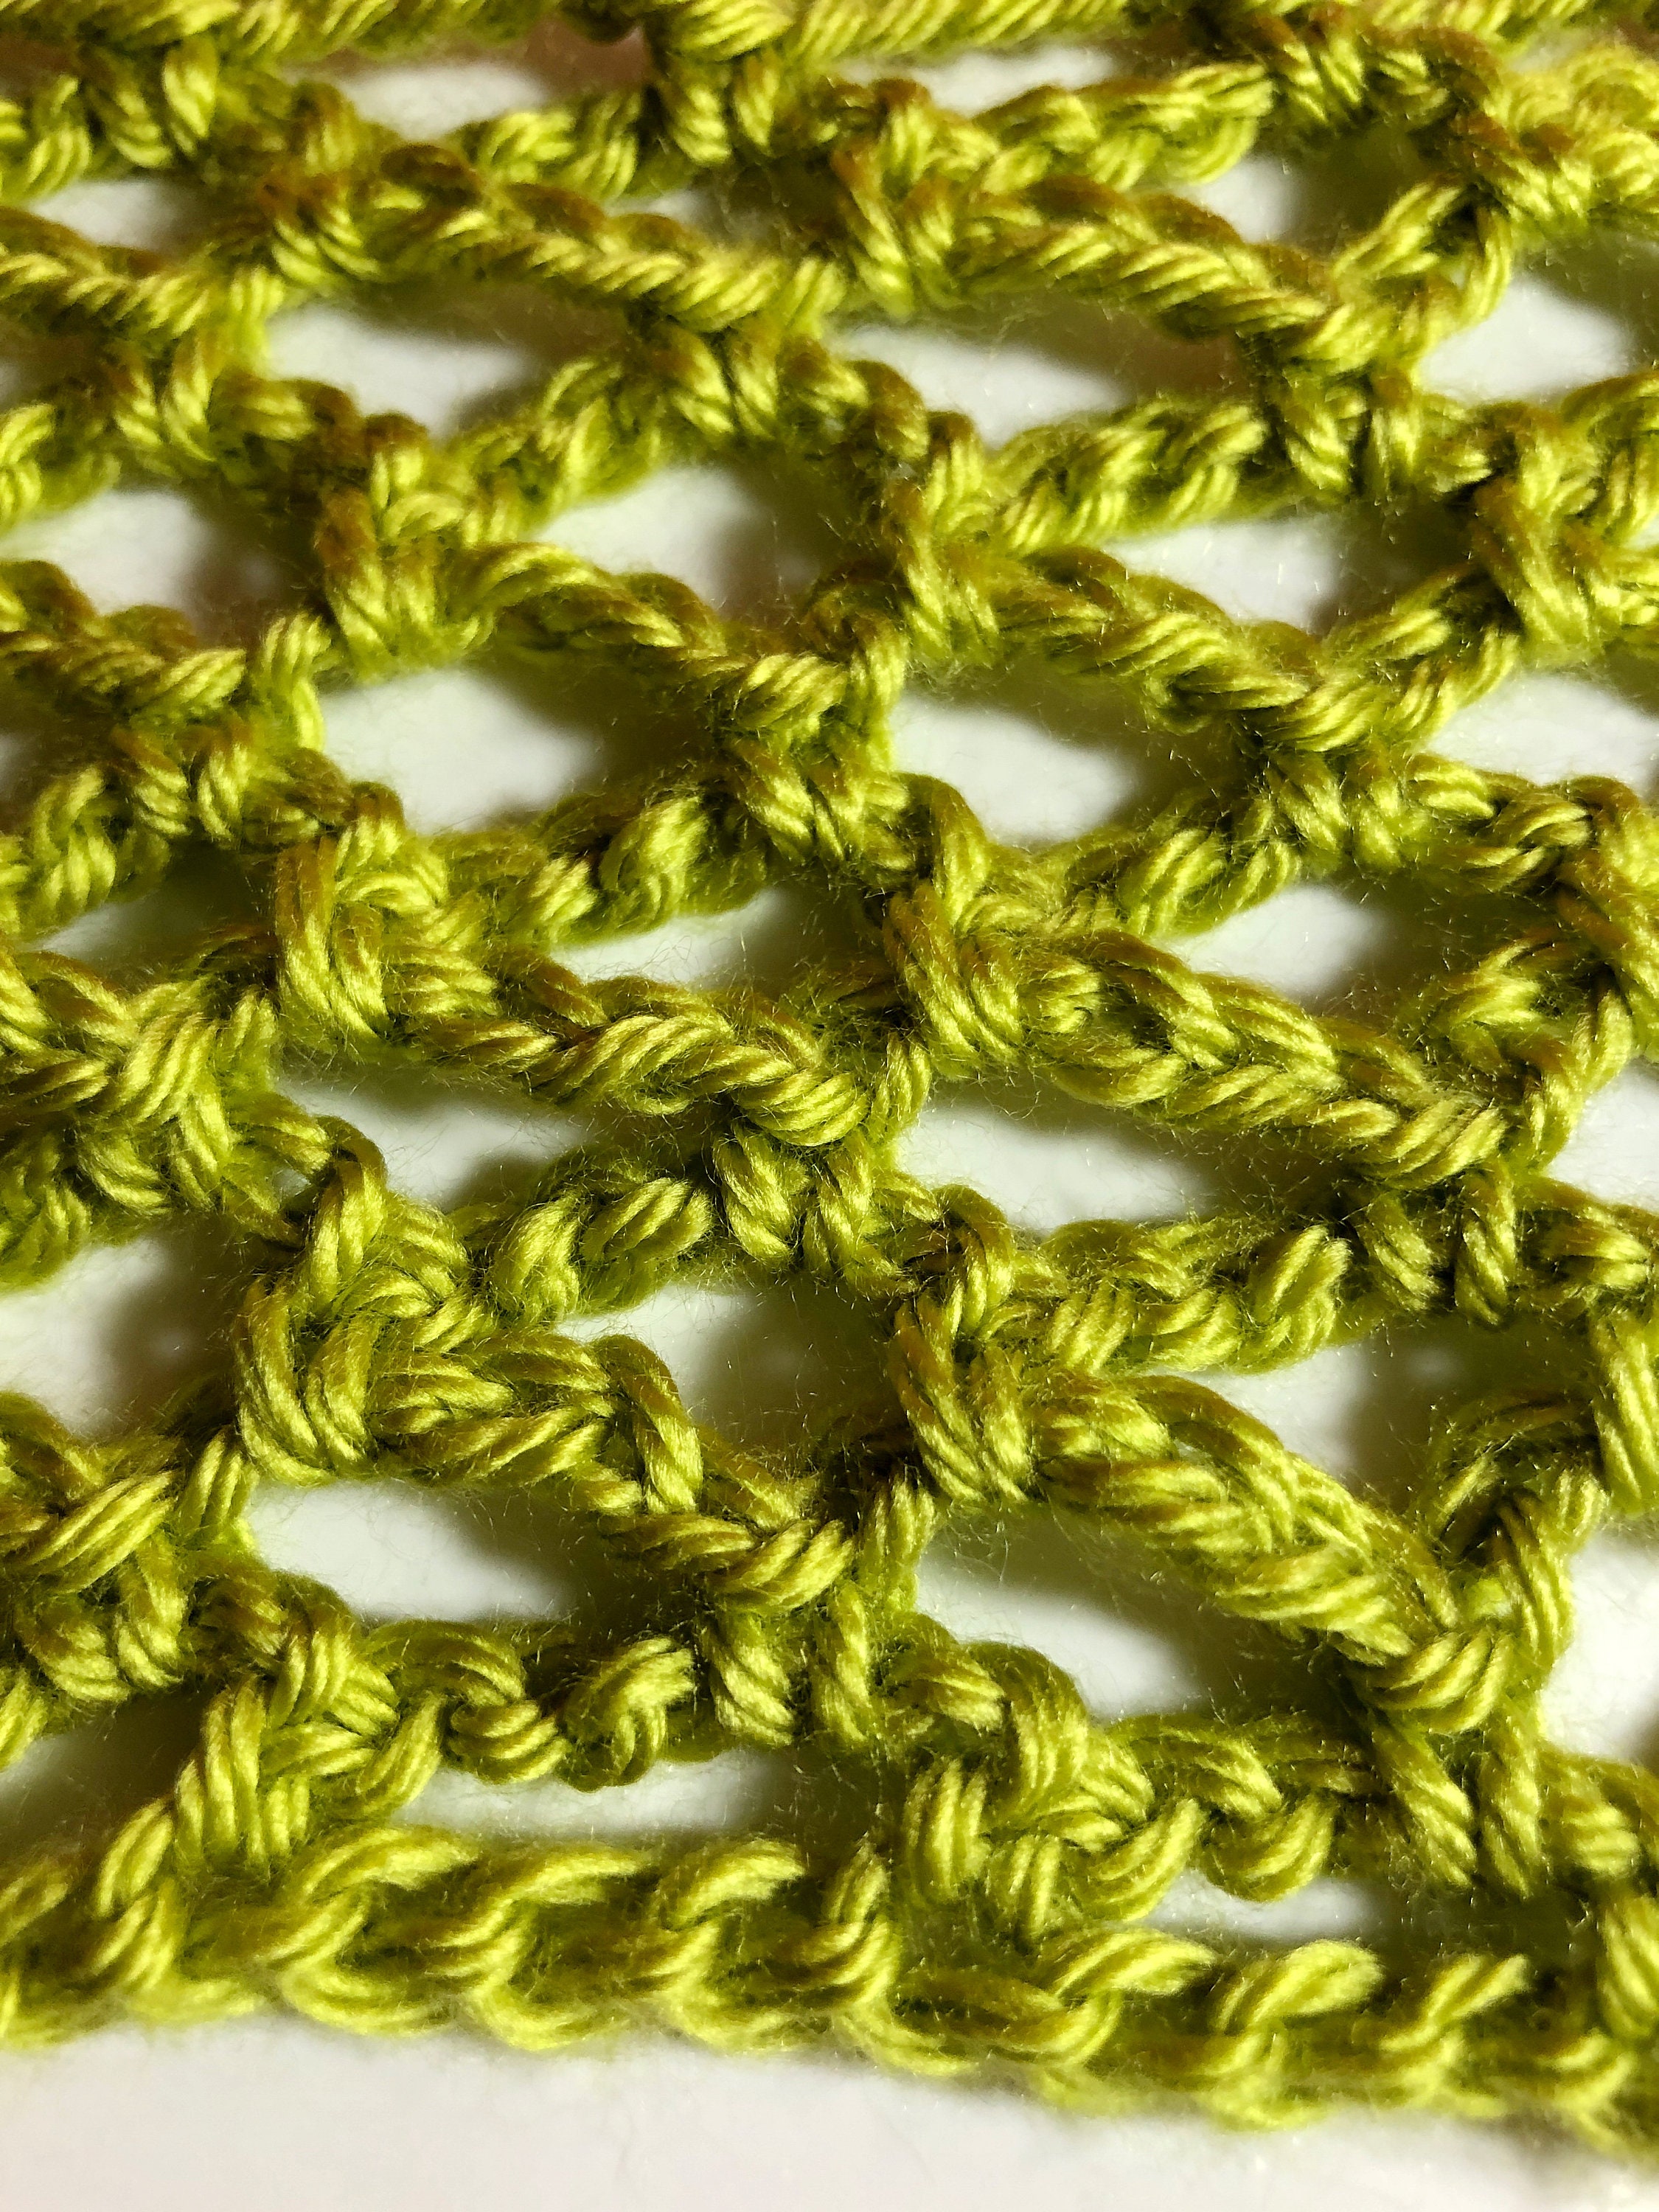 Book: Learn to Crochet Book Crochet Pattern Book Crochet for